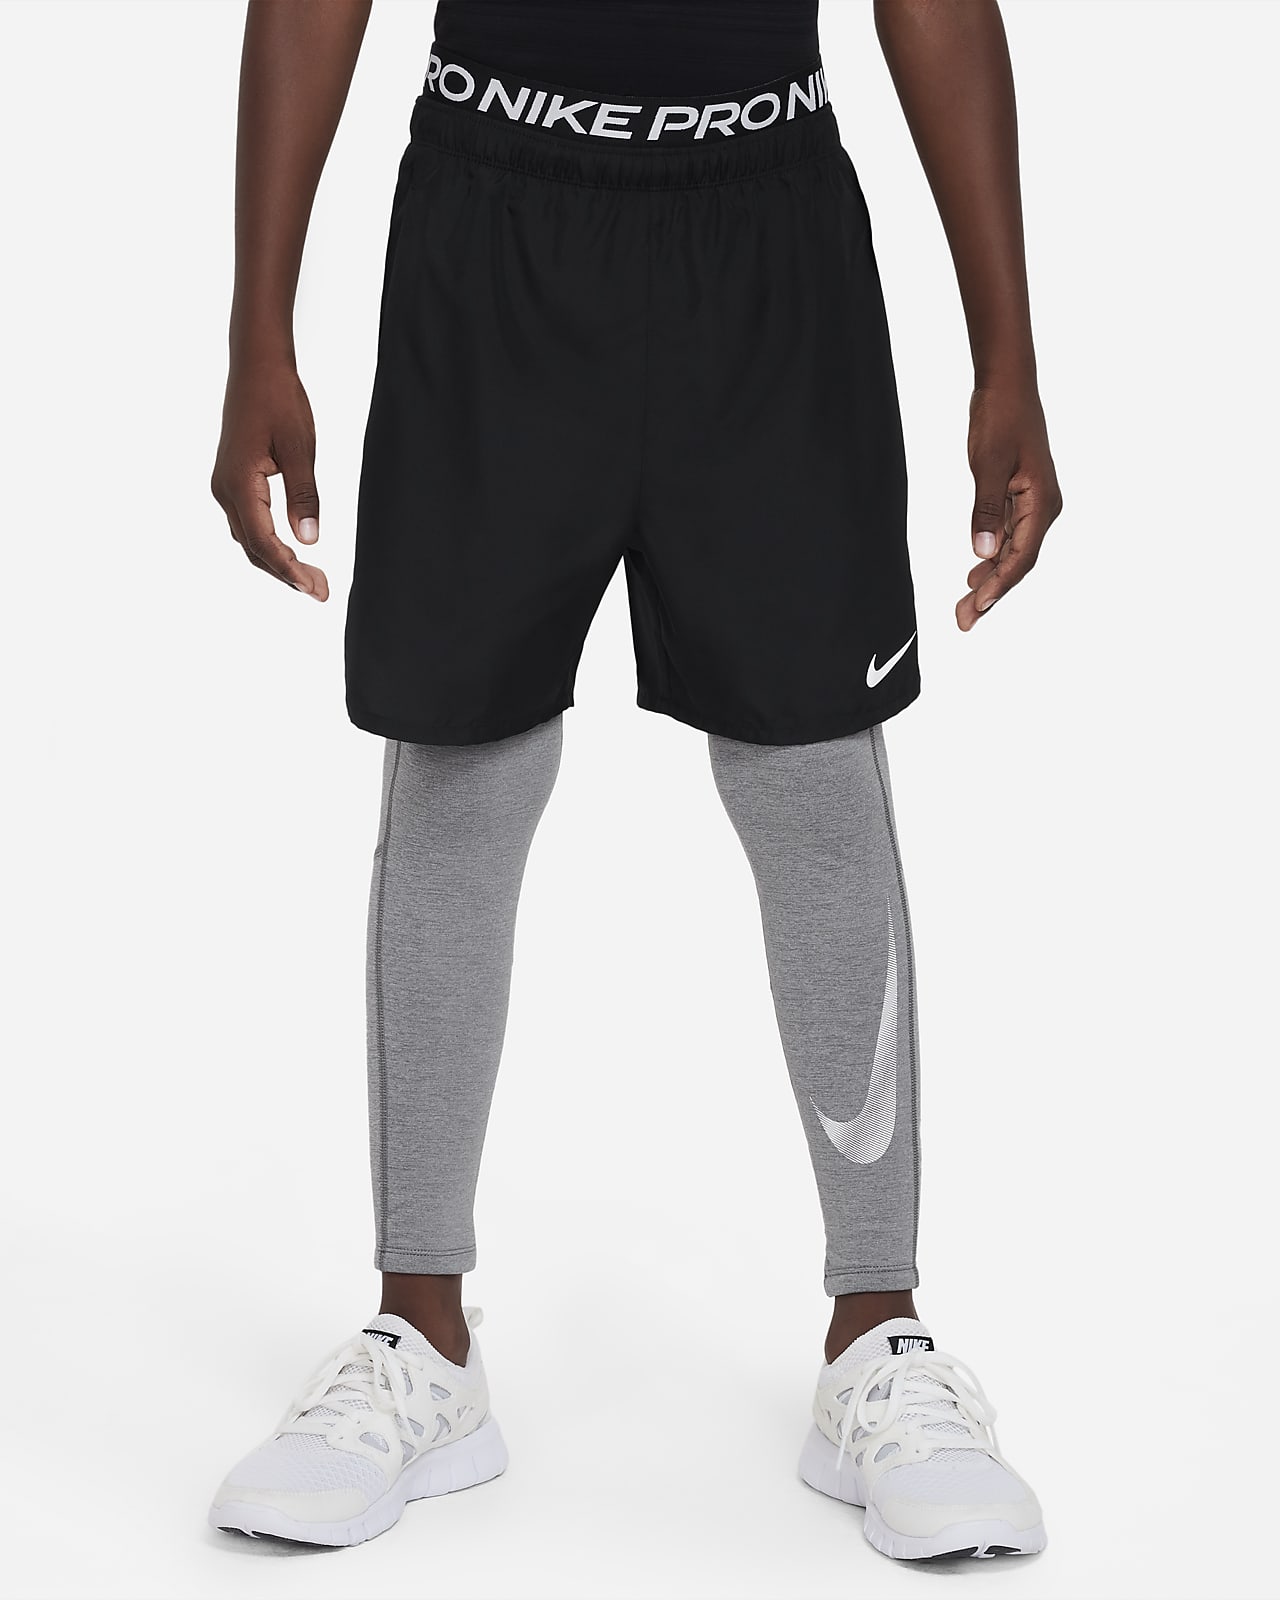 NIKE Pro Dri-FIT Tights, Black Men's Athletic Leggings